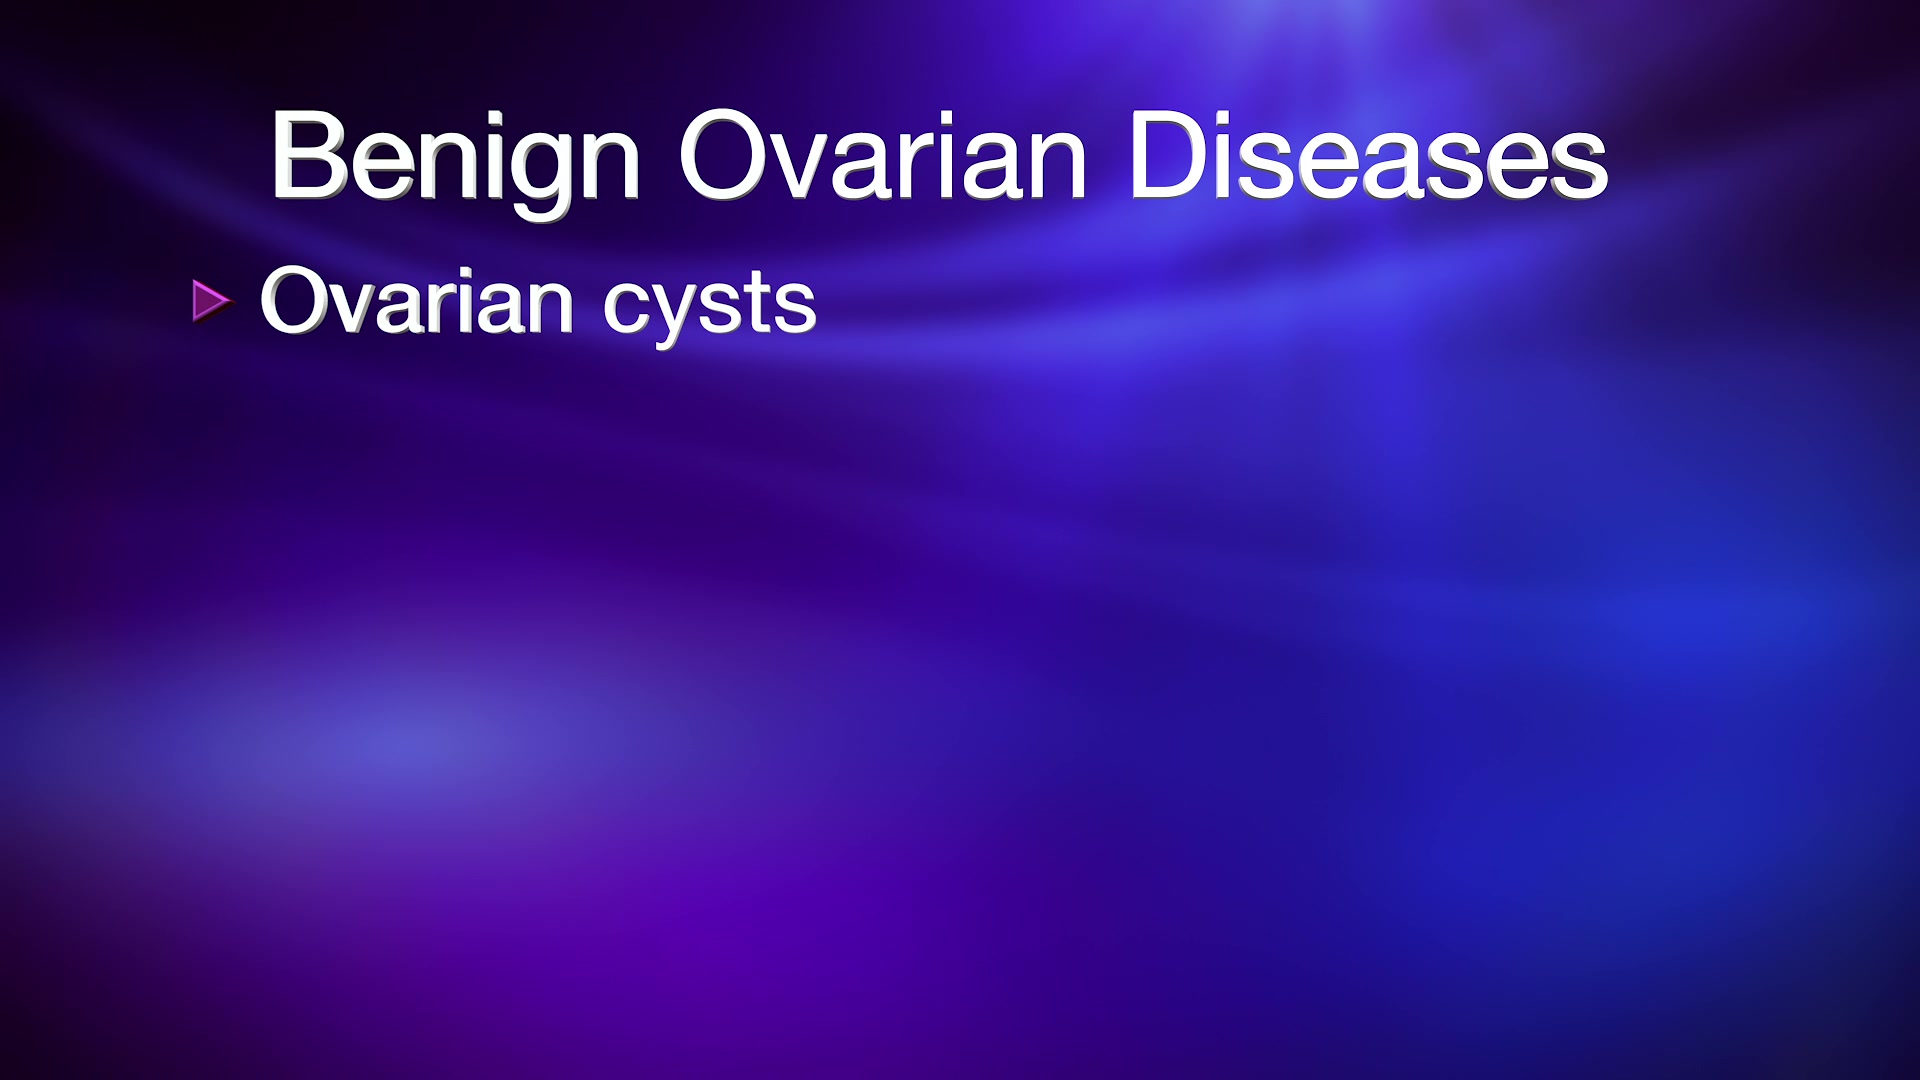 Benign Ovarian Diseases